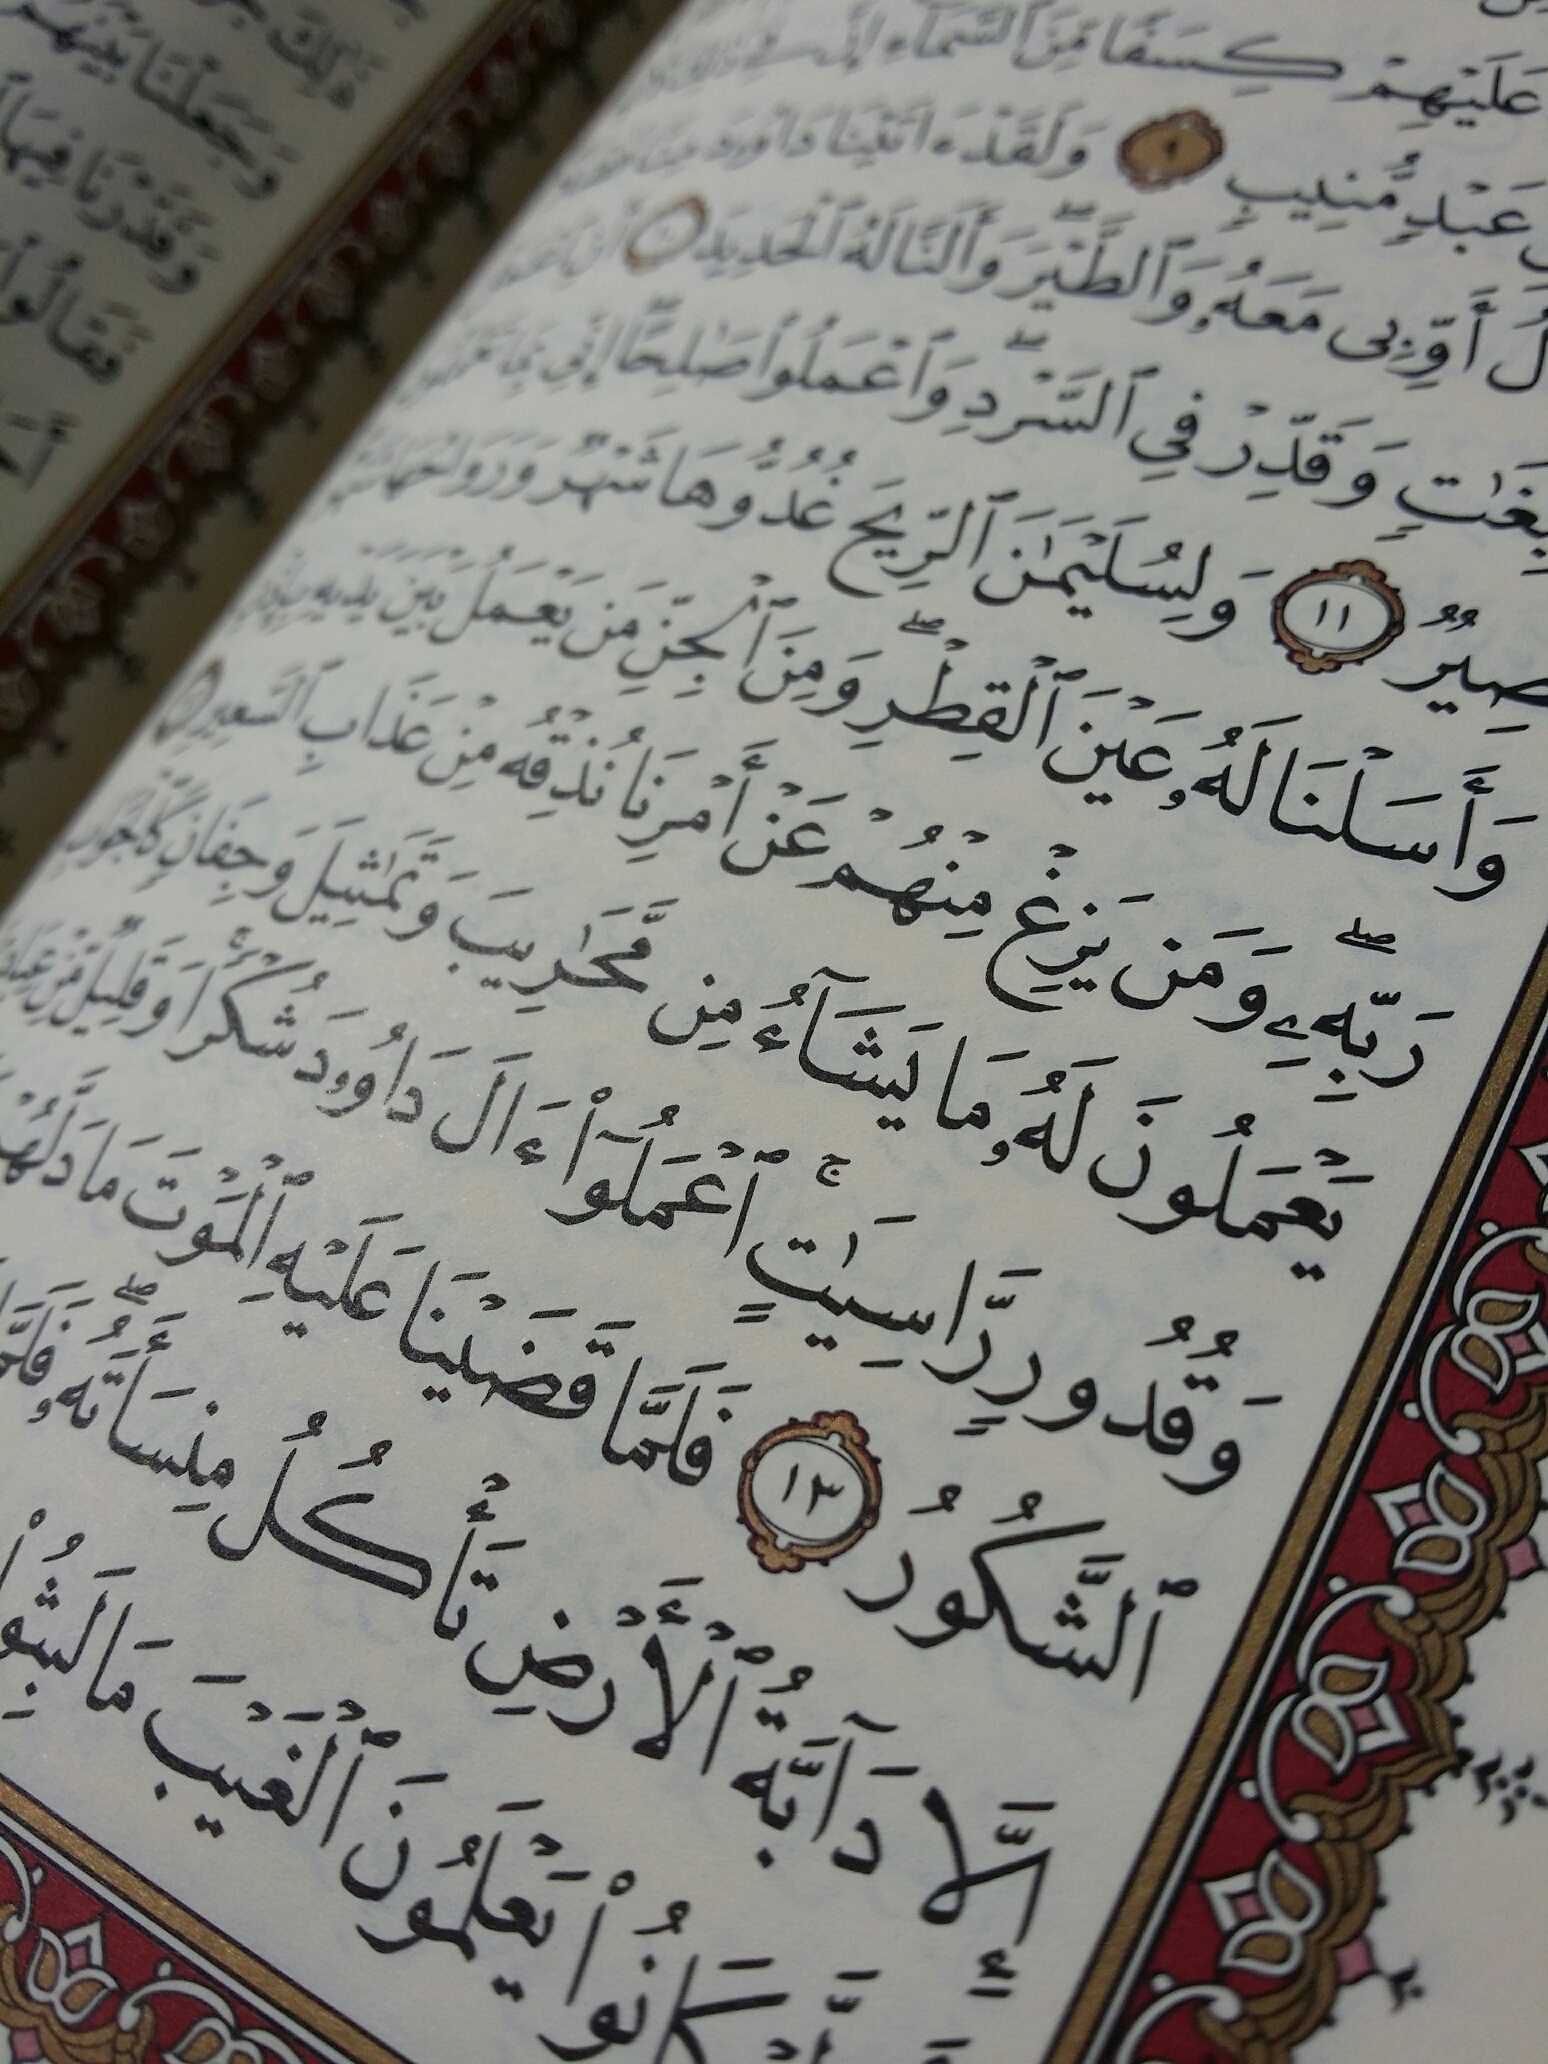 Parmi les mérites de la glorification d’Allah mentionnés dans le Coran   